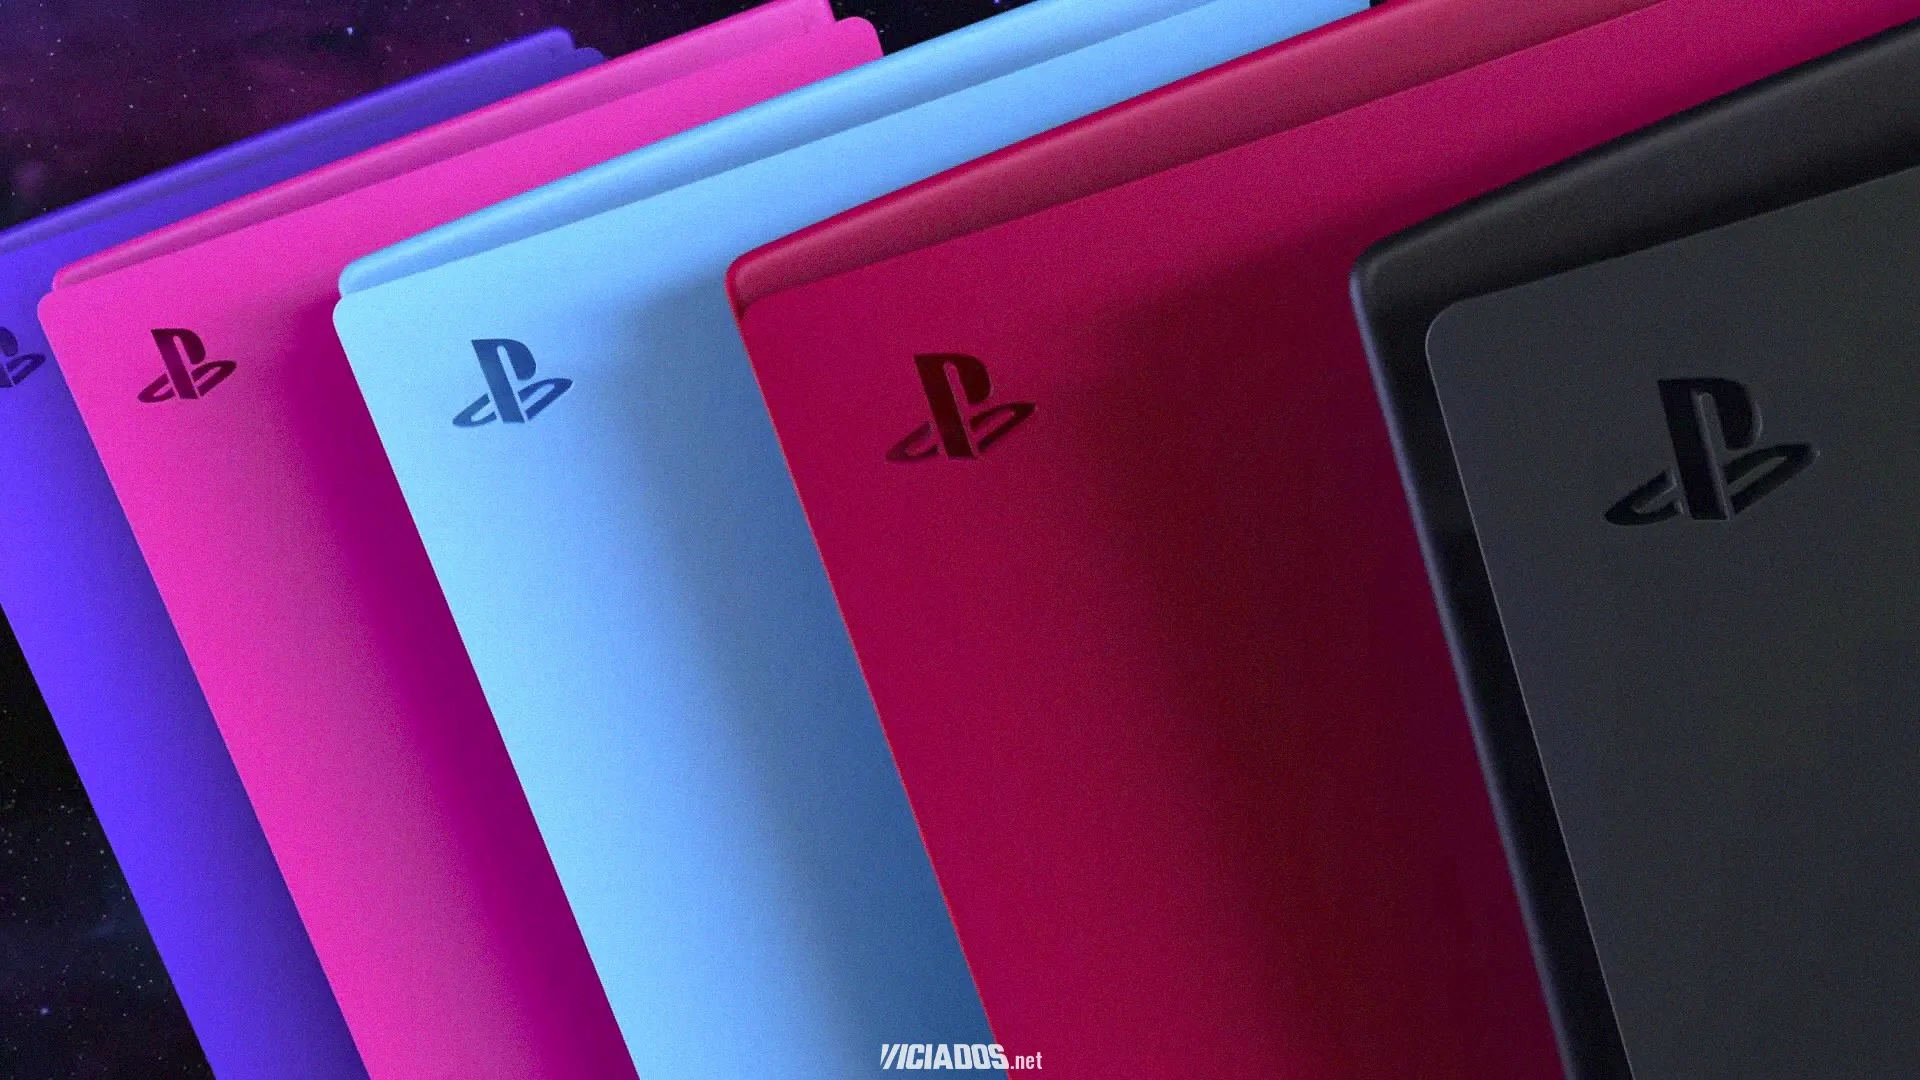 PlayStation 5 | Você pode personalizar seu PS5 com as capas coloridas com 120 reais de desconto 2023 Viciados